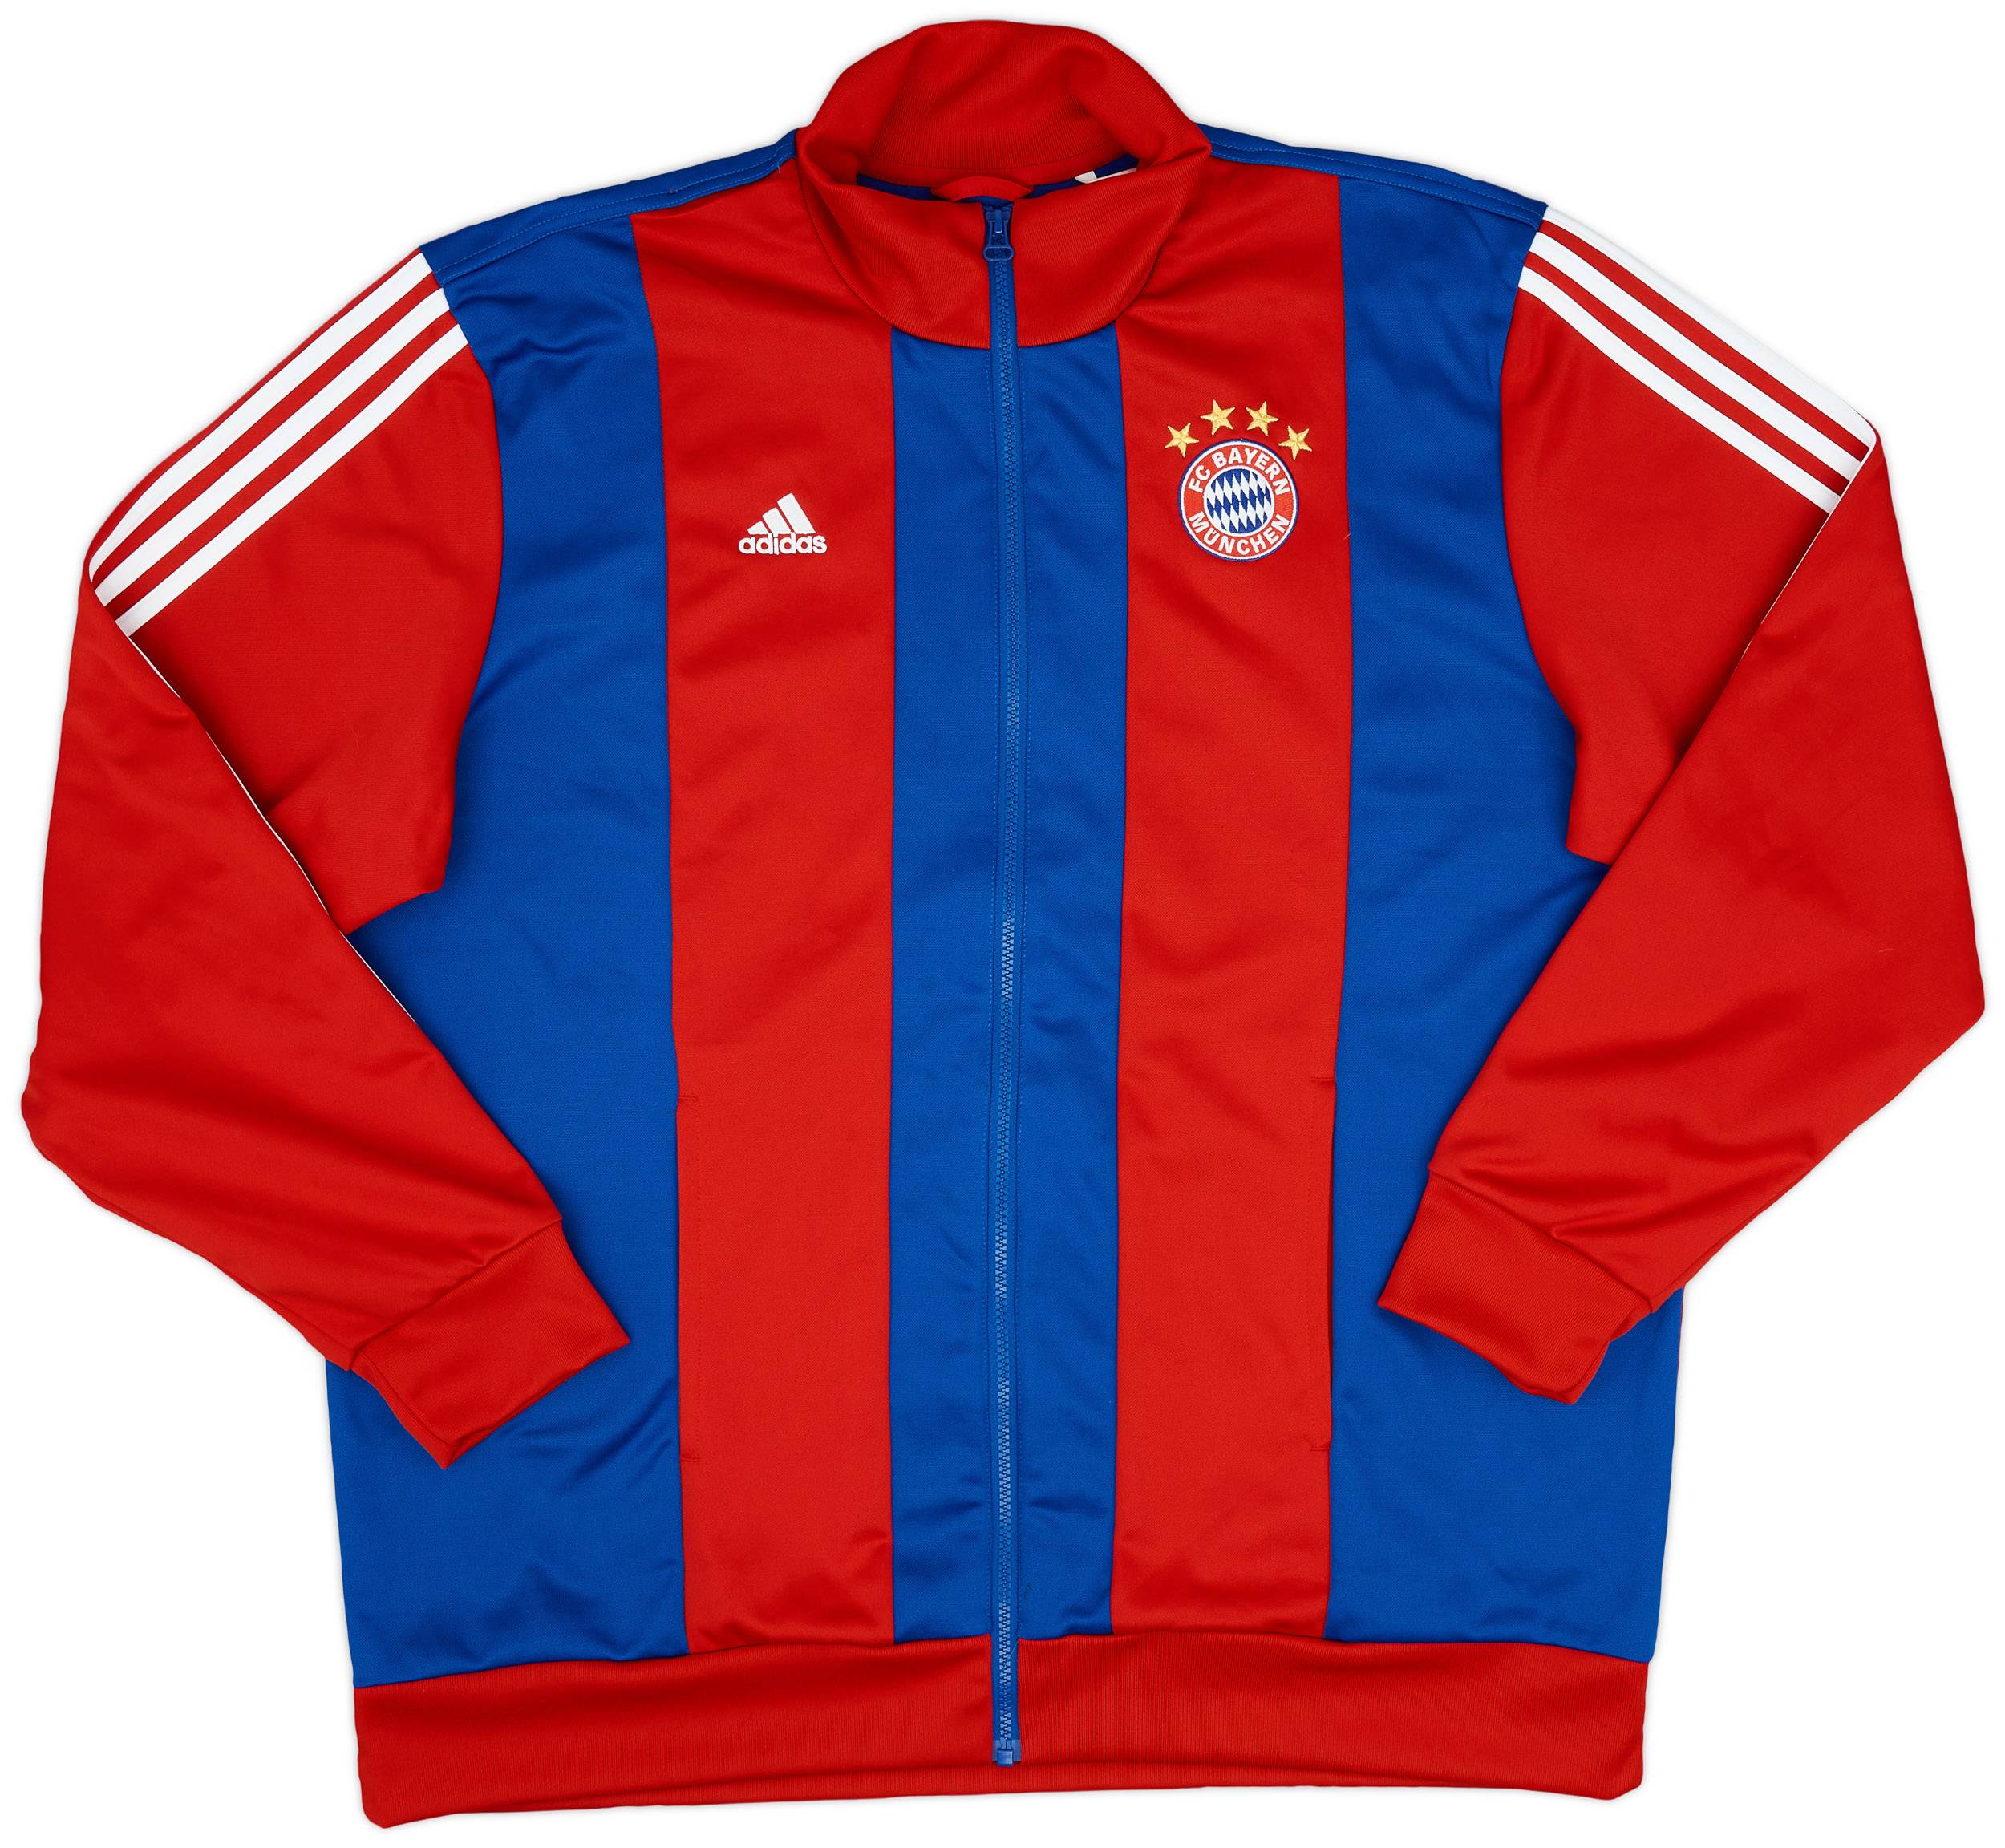 2014-15 Bayern Munich adidas Track Jacket - 9/10 - (XXL)